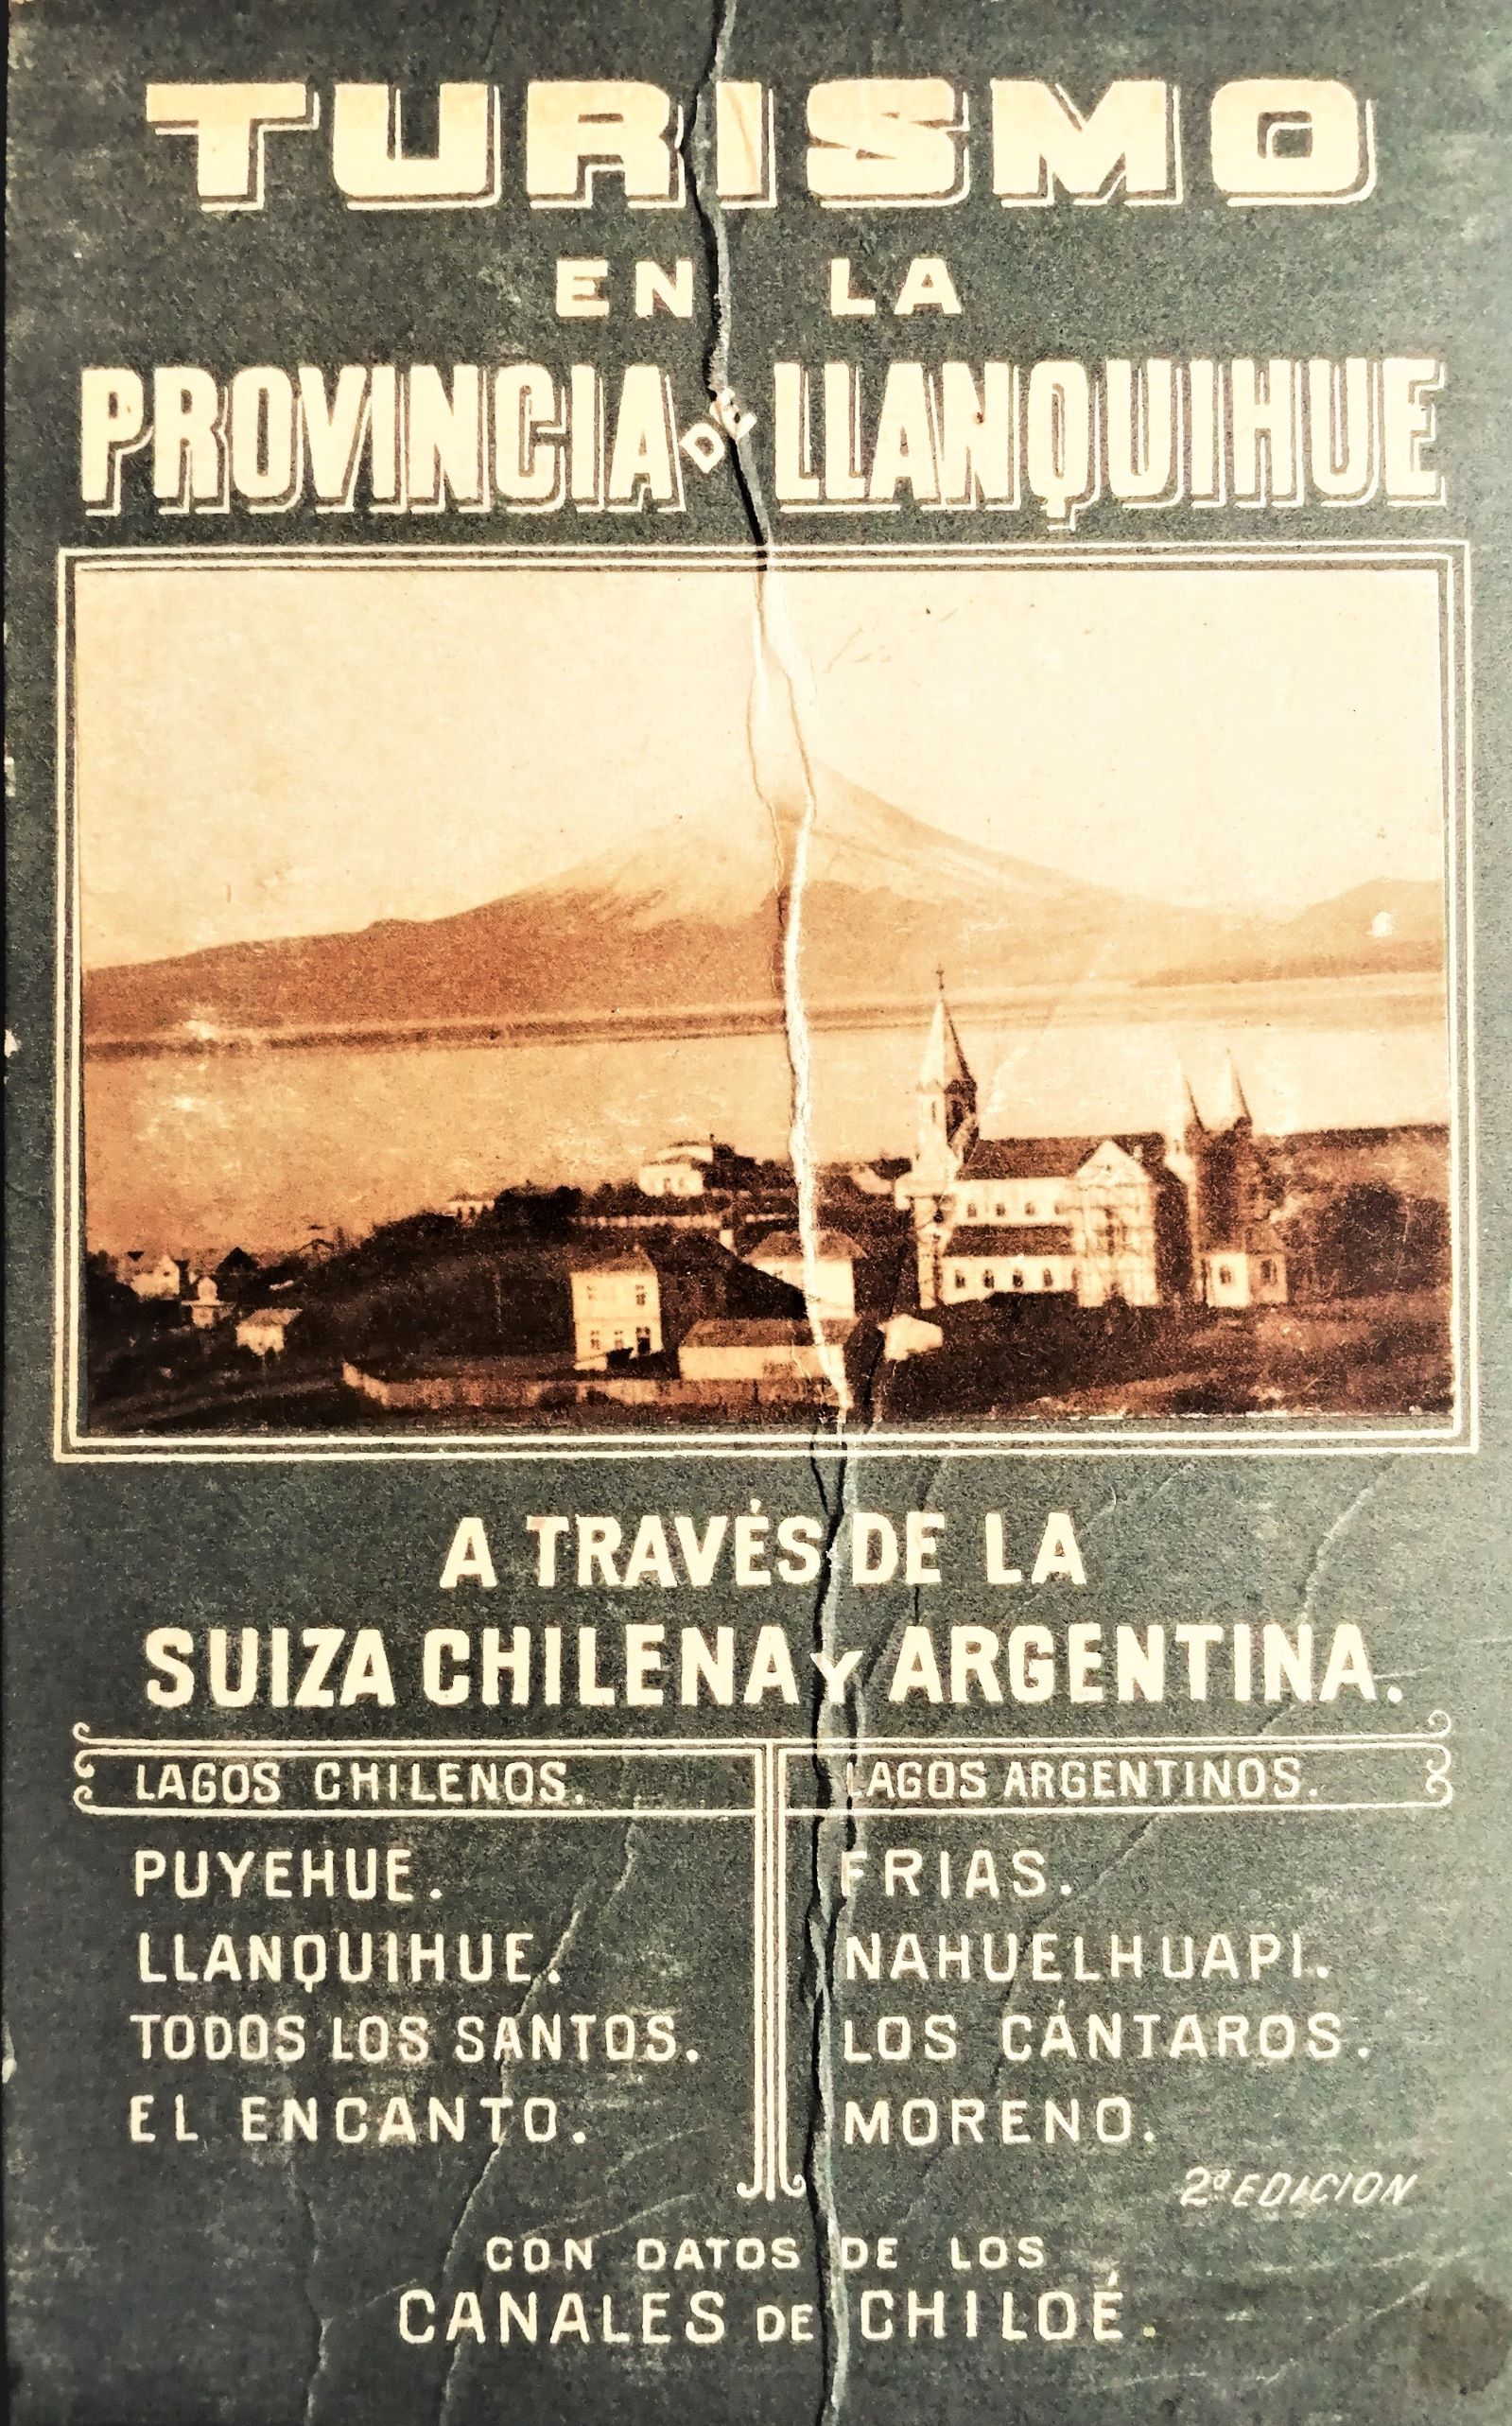 Germán Wiederhold - Turismo en la provincia de Llanquihue a través de la suiza chilena y argentina con datos de los canales de Chiloé